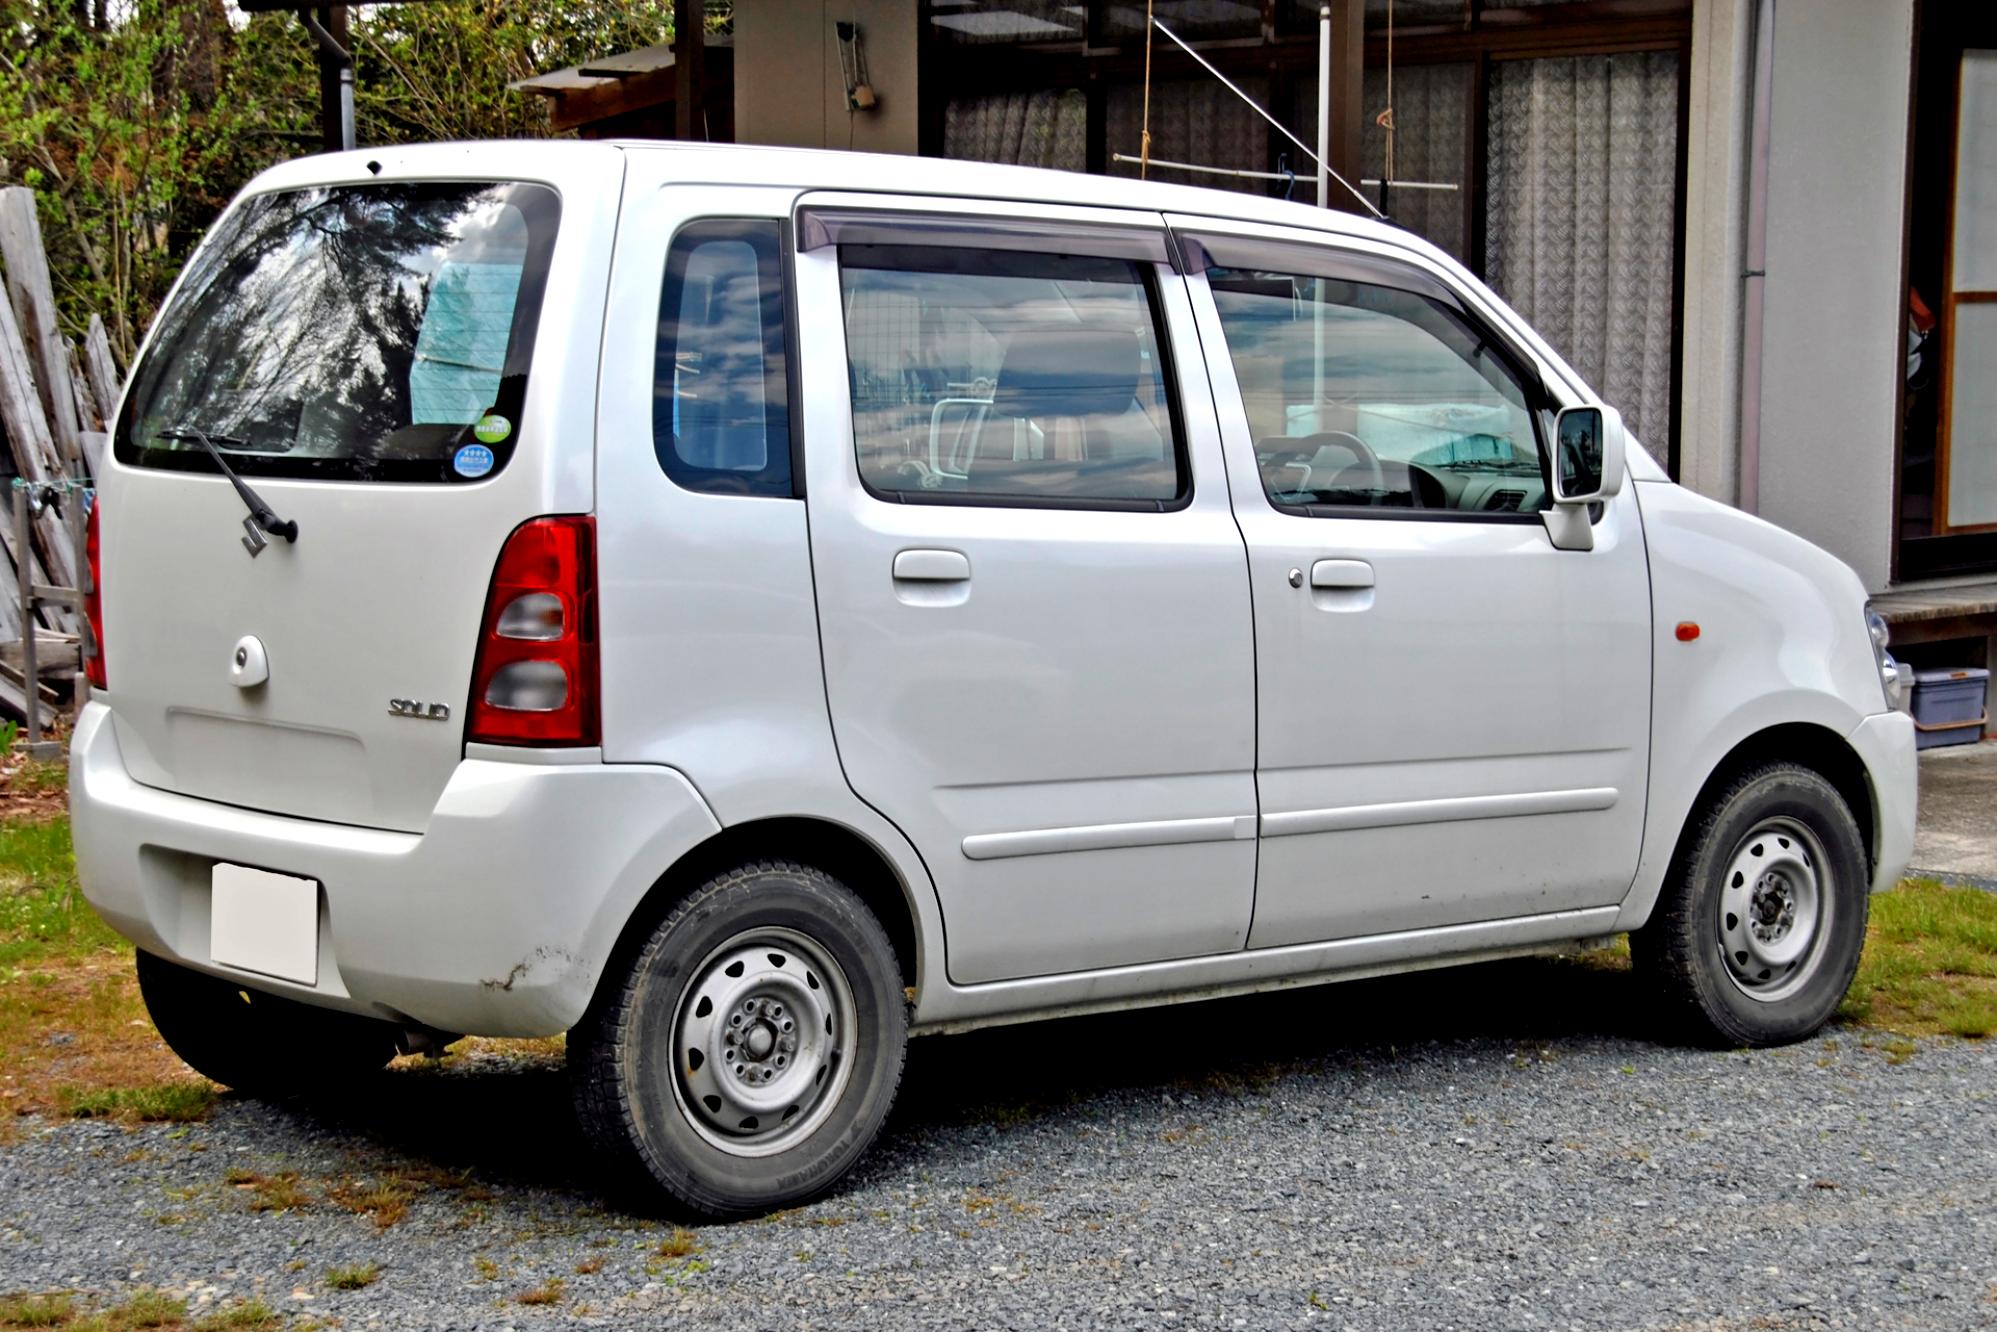 Maruti Suzuki Wagon R 2005 #3